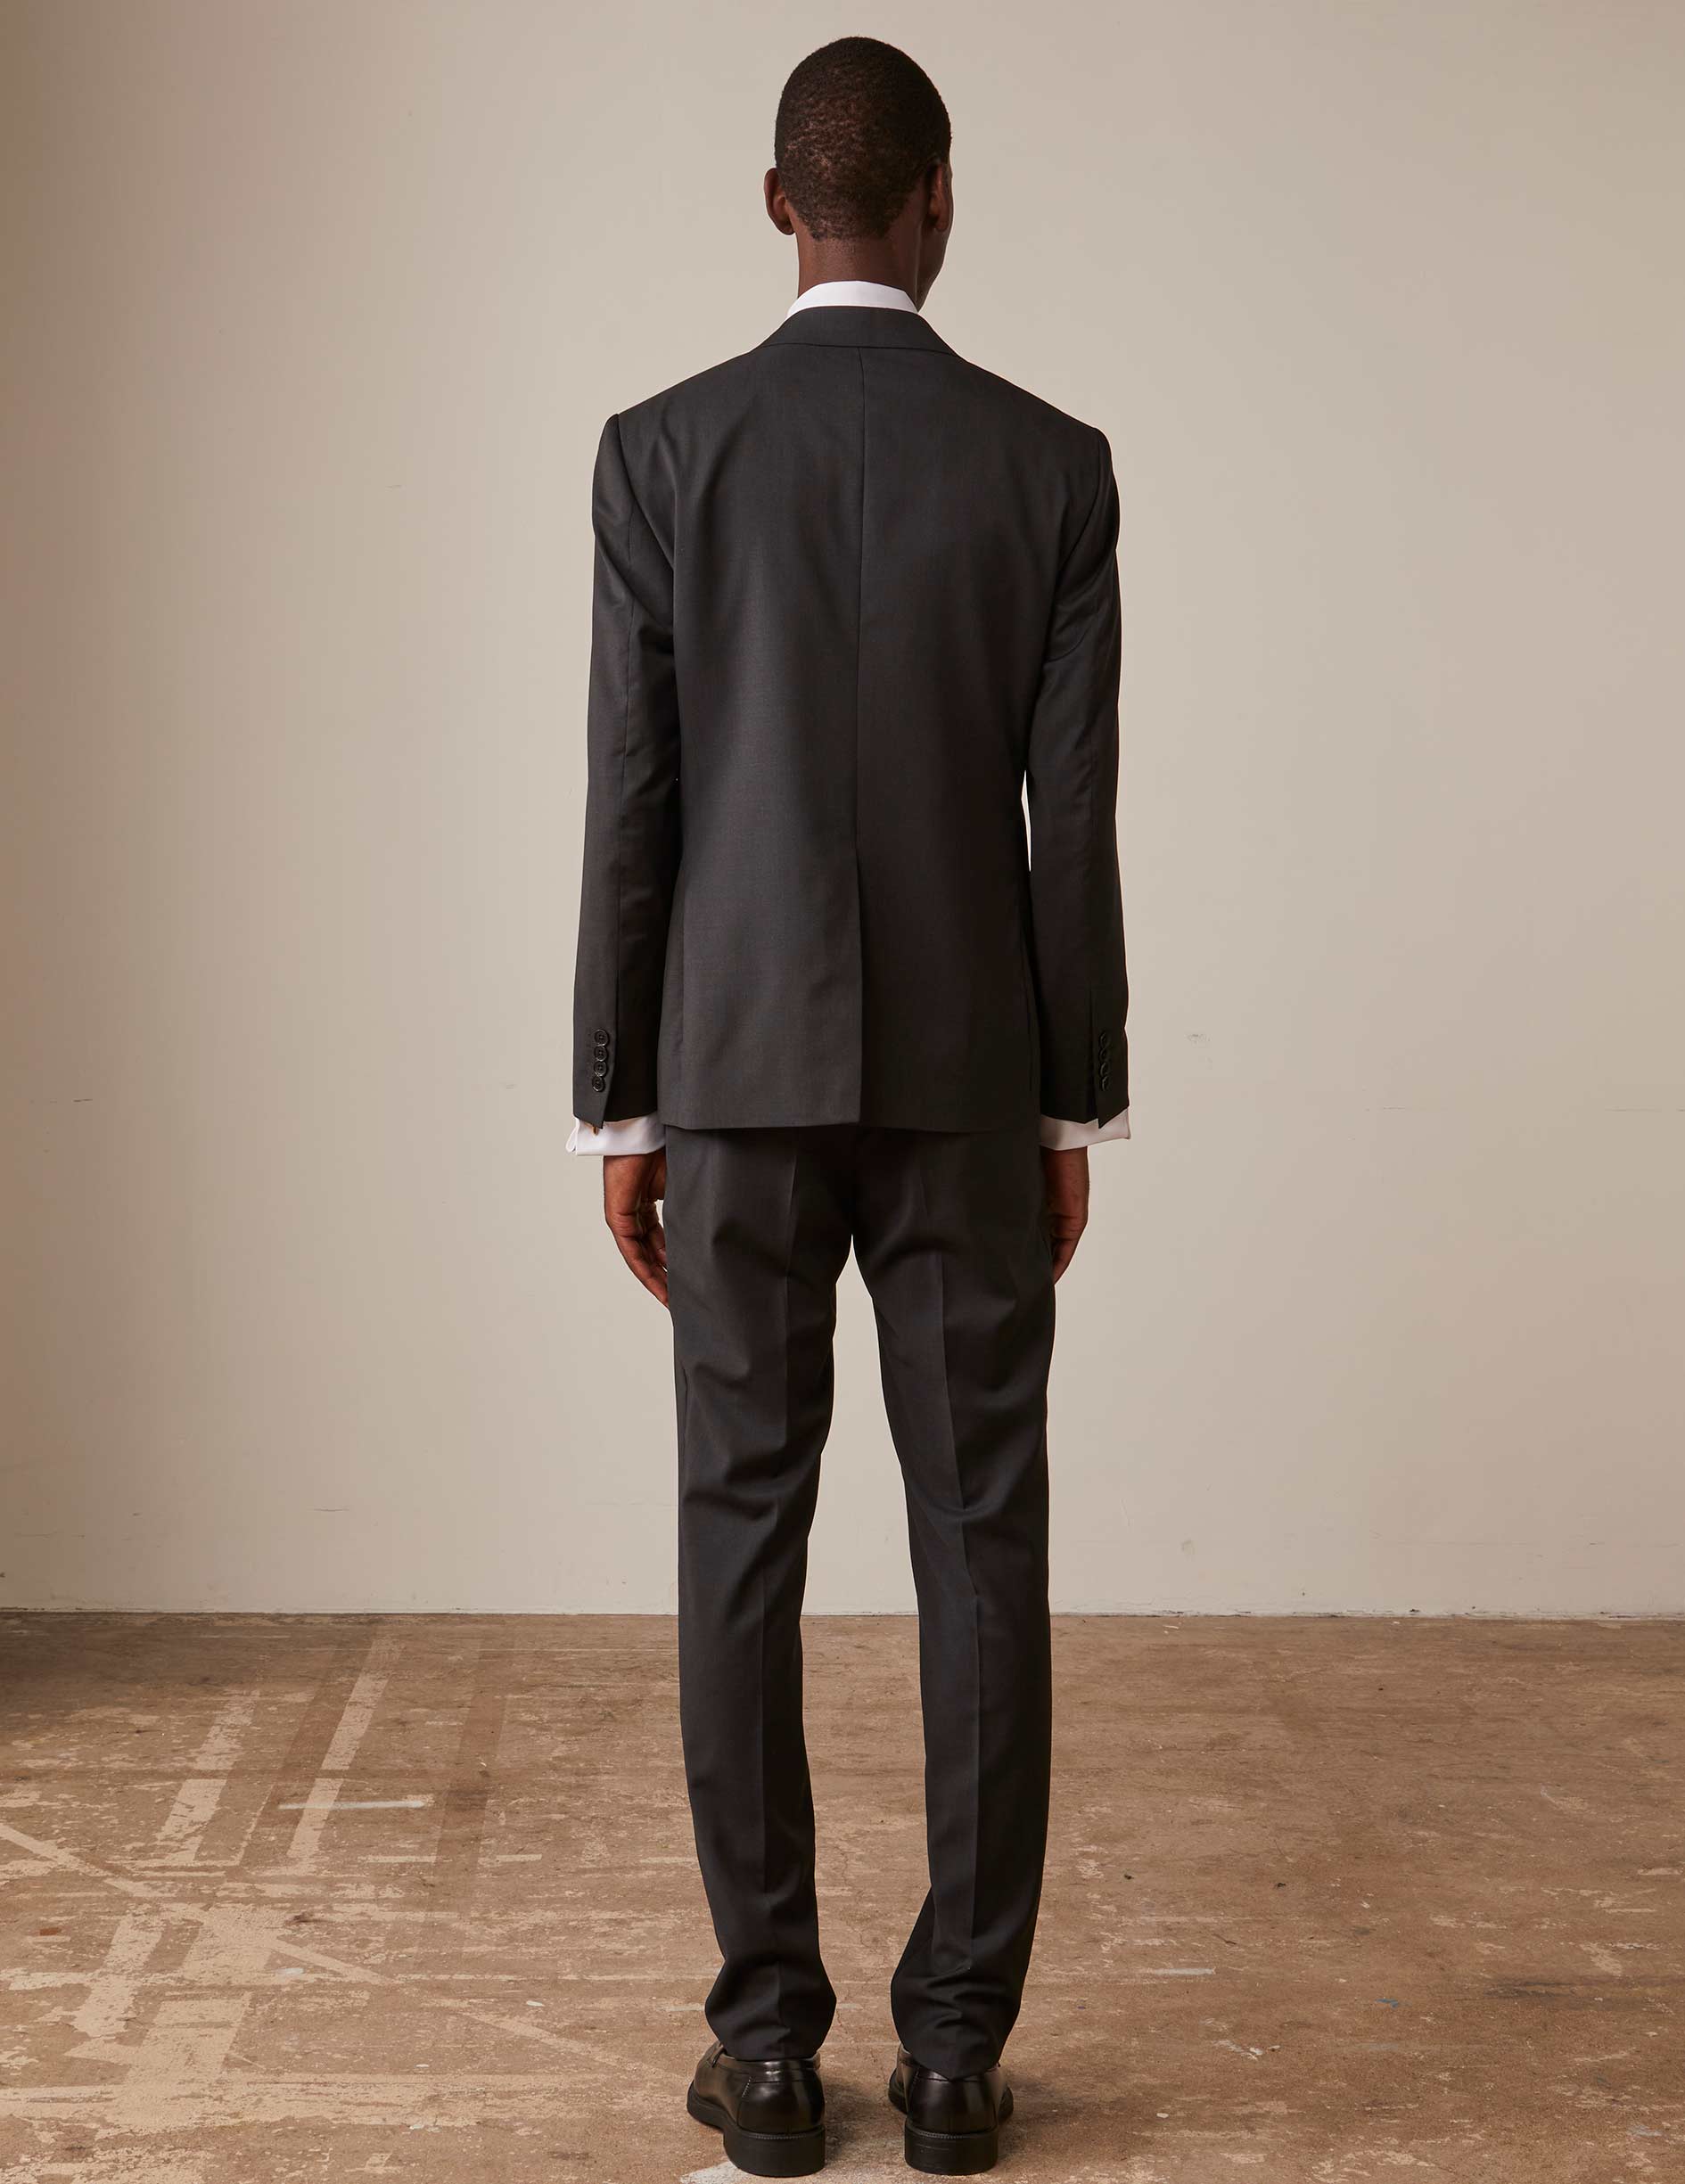 Fabien suit jacket in dark gray wool twill